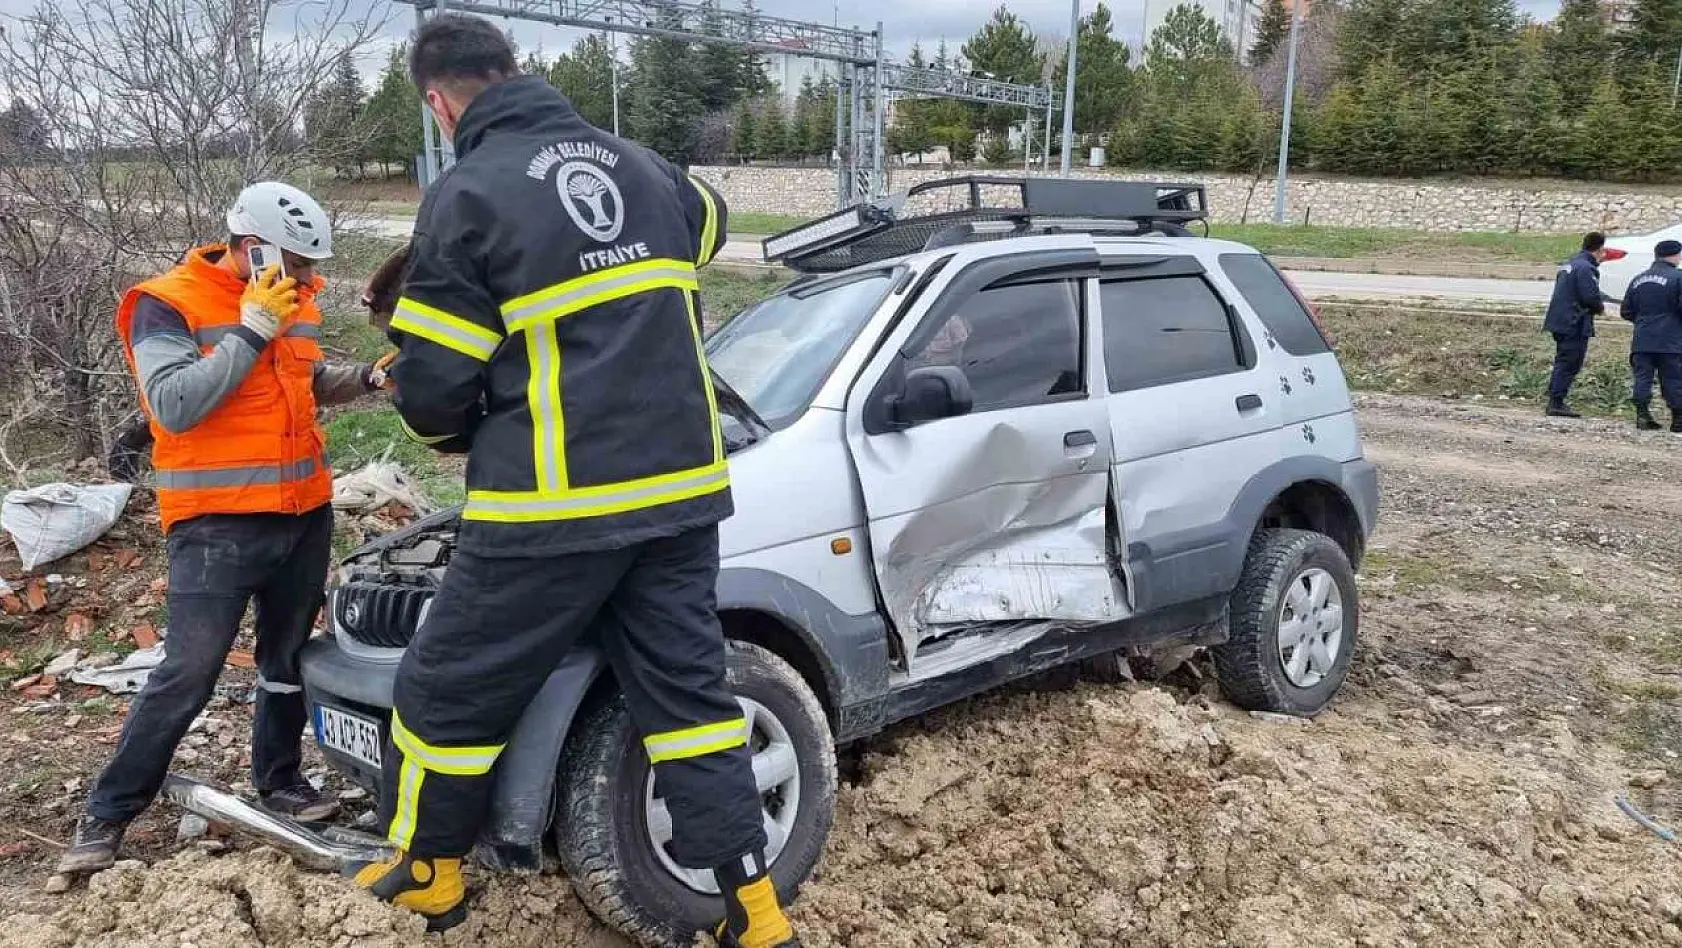 Kütahya Domaniç'te trafik kazası: 7 yaralı